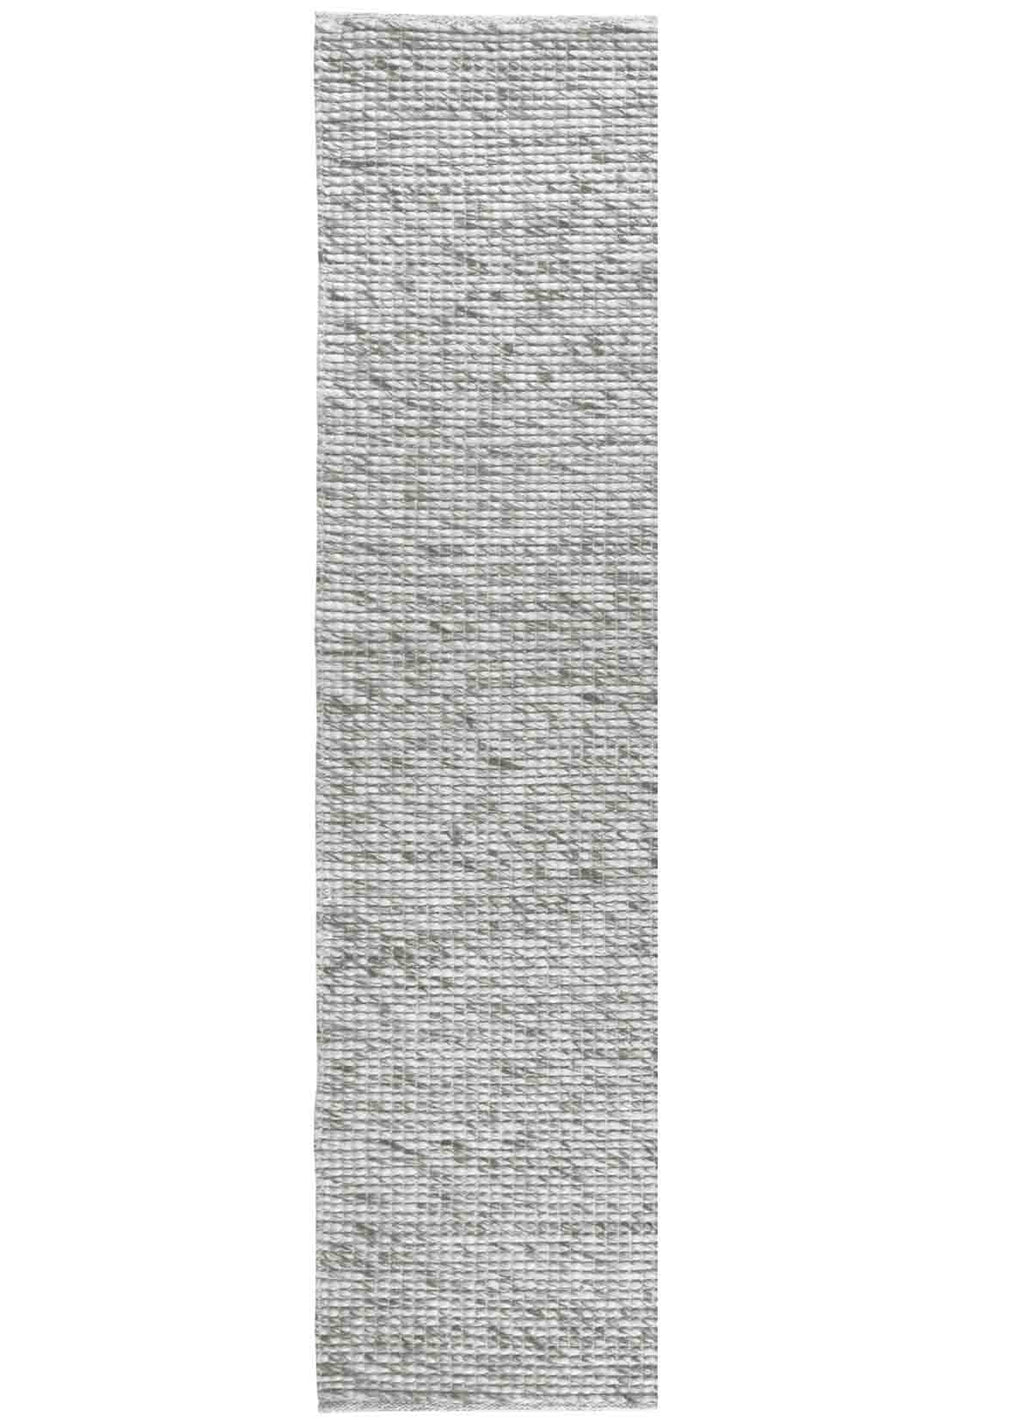 Dahlia Light Grey Runner | Wool Rugs Belrose Sydney | Rugs 'N' Timber